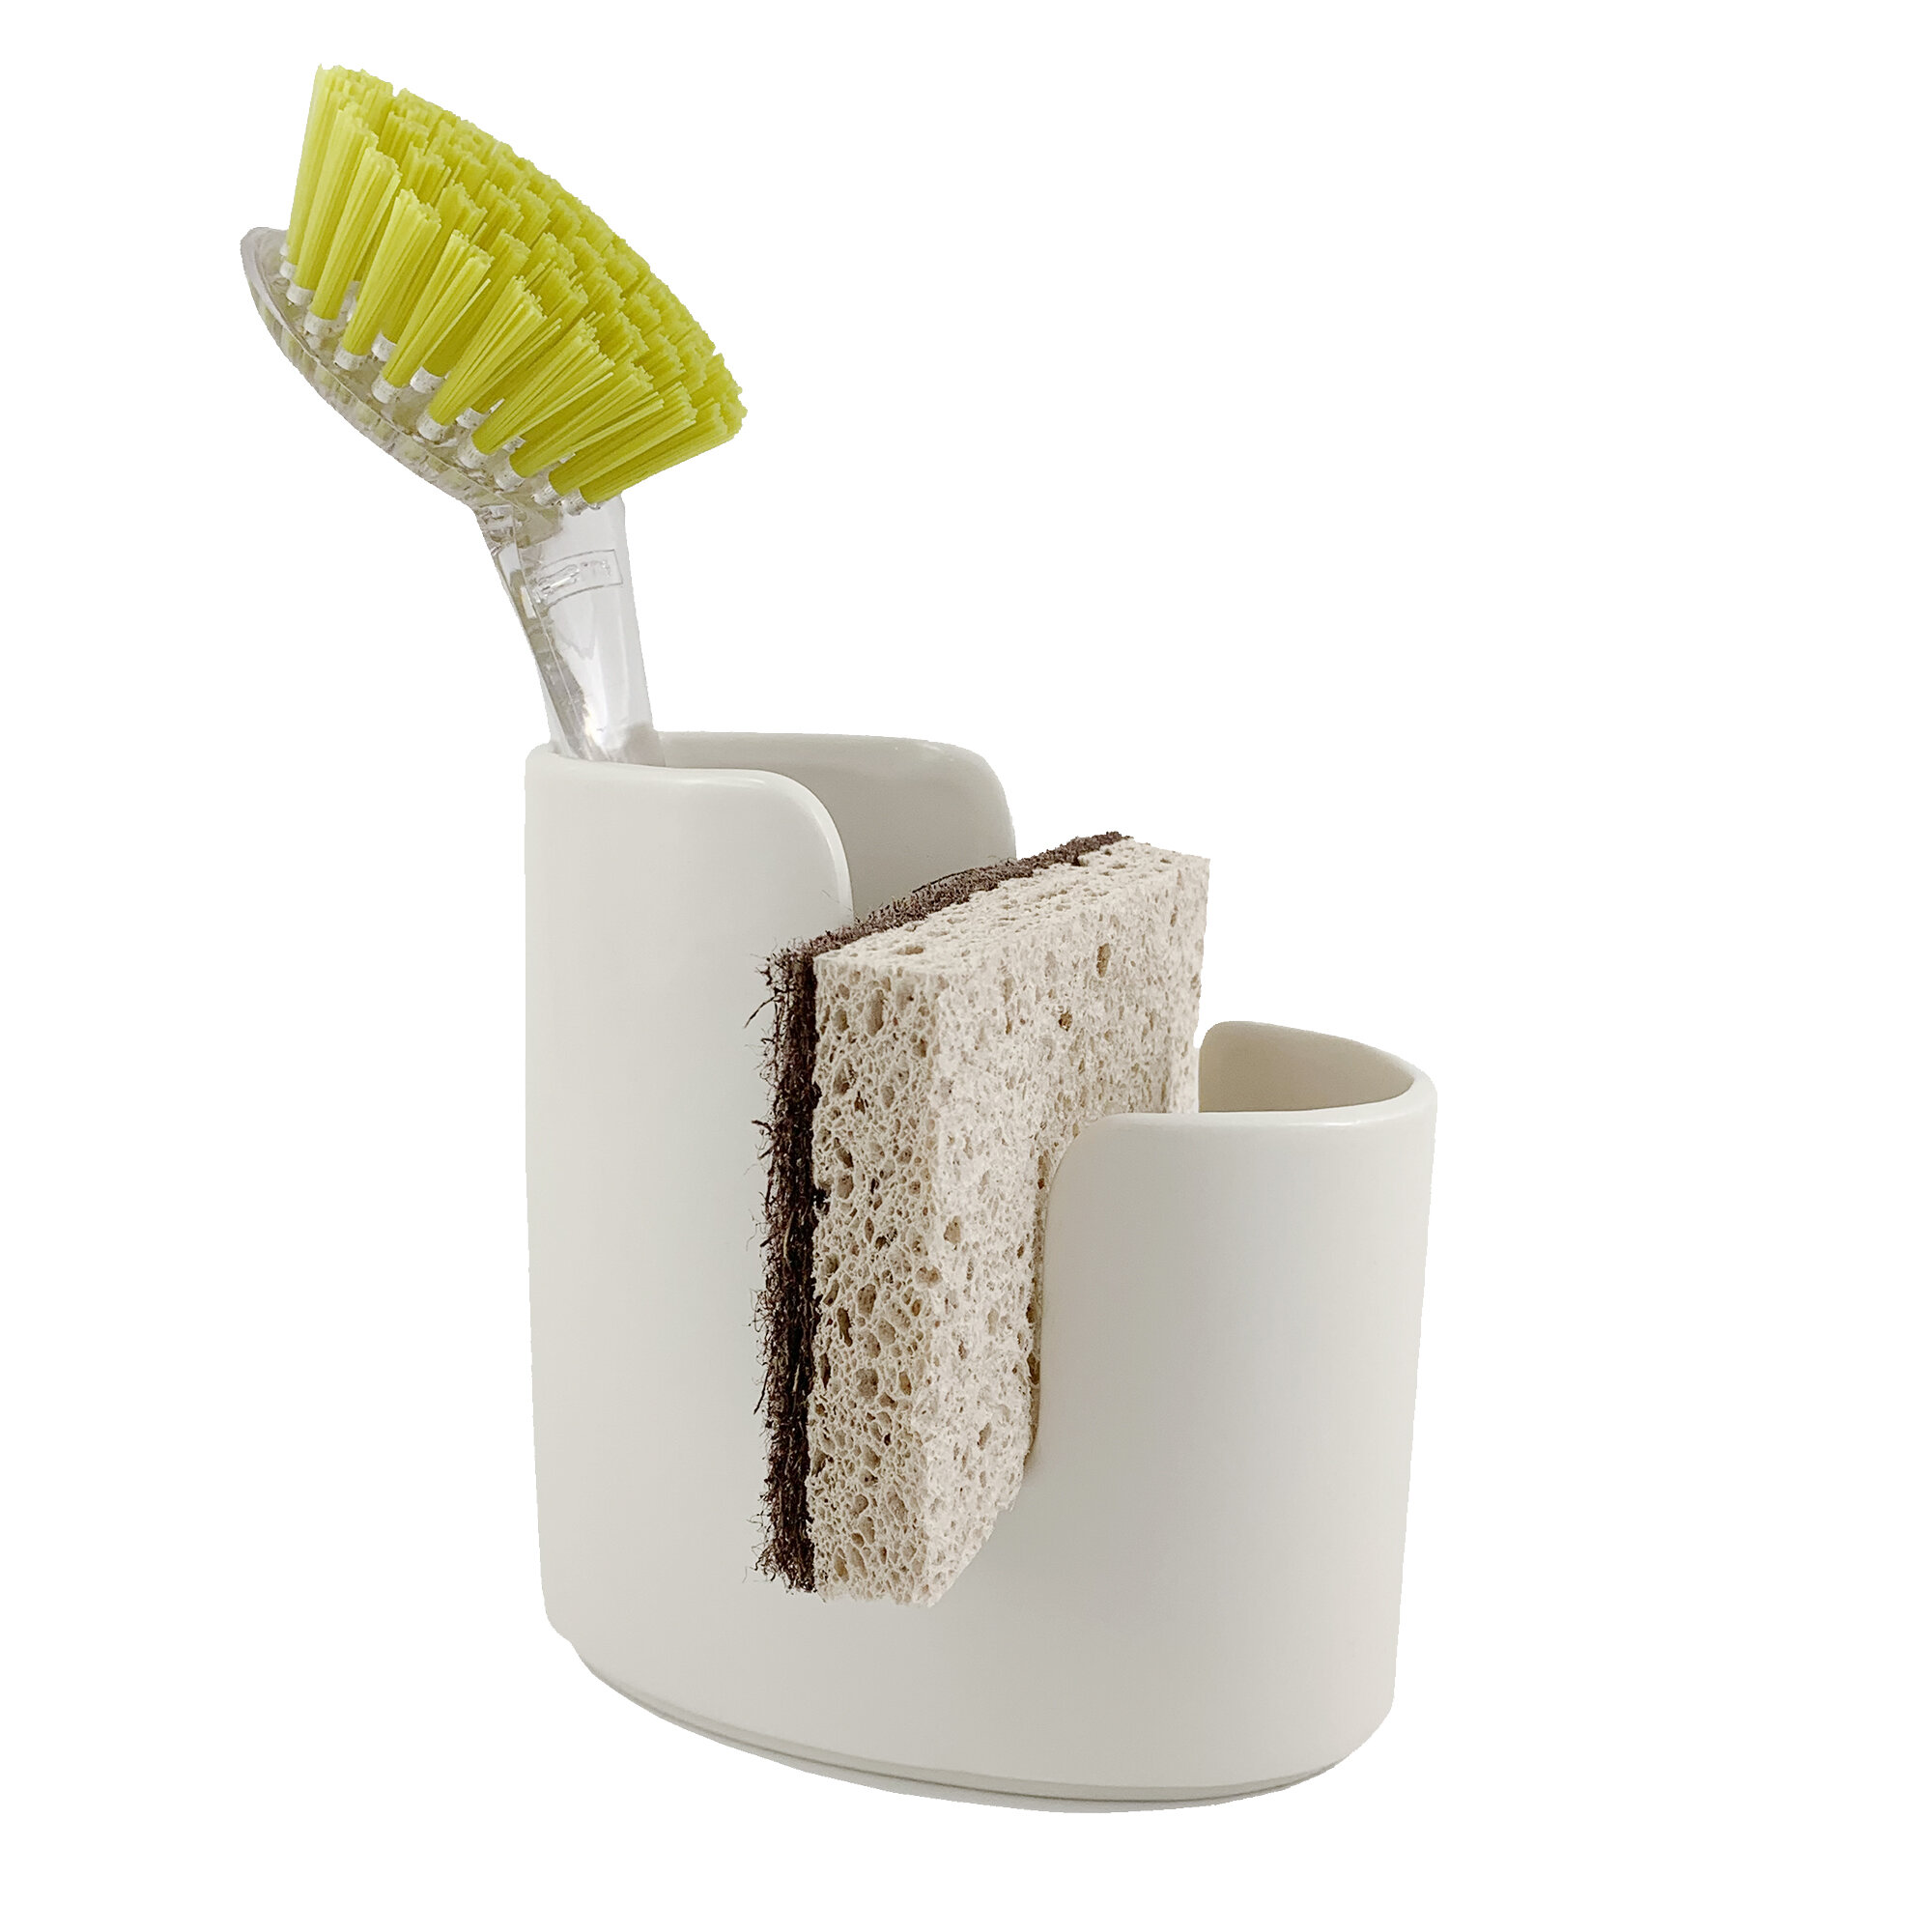 MyGift Ceramic Sponge Holder & Reviews